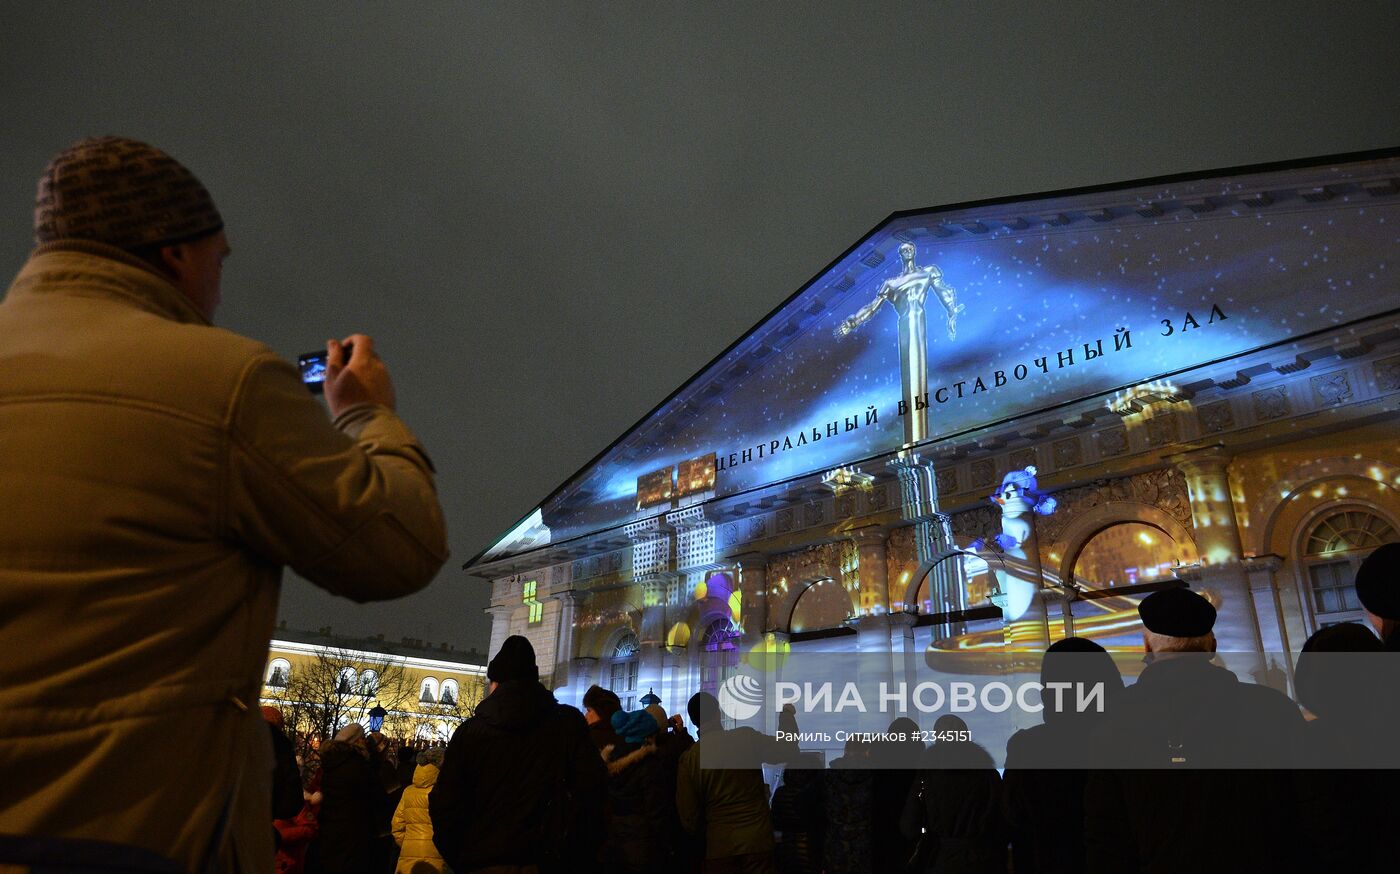 Новогоднее аудио-визуальное 3D шоу "Сны Москвы"